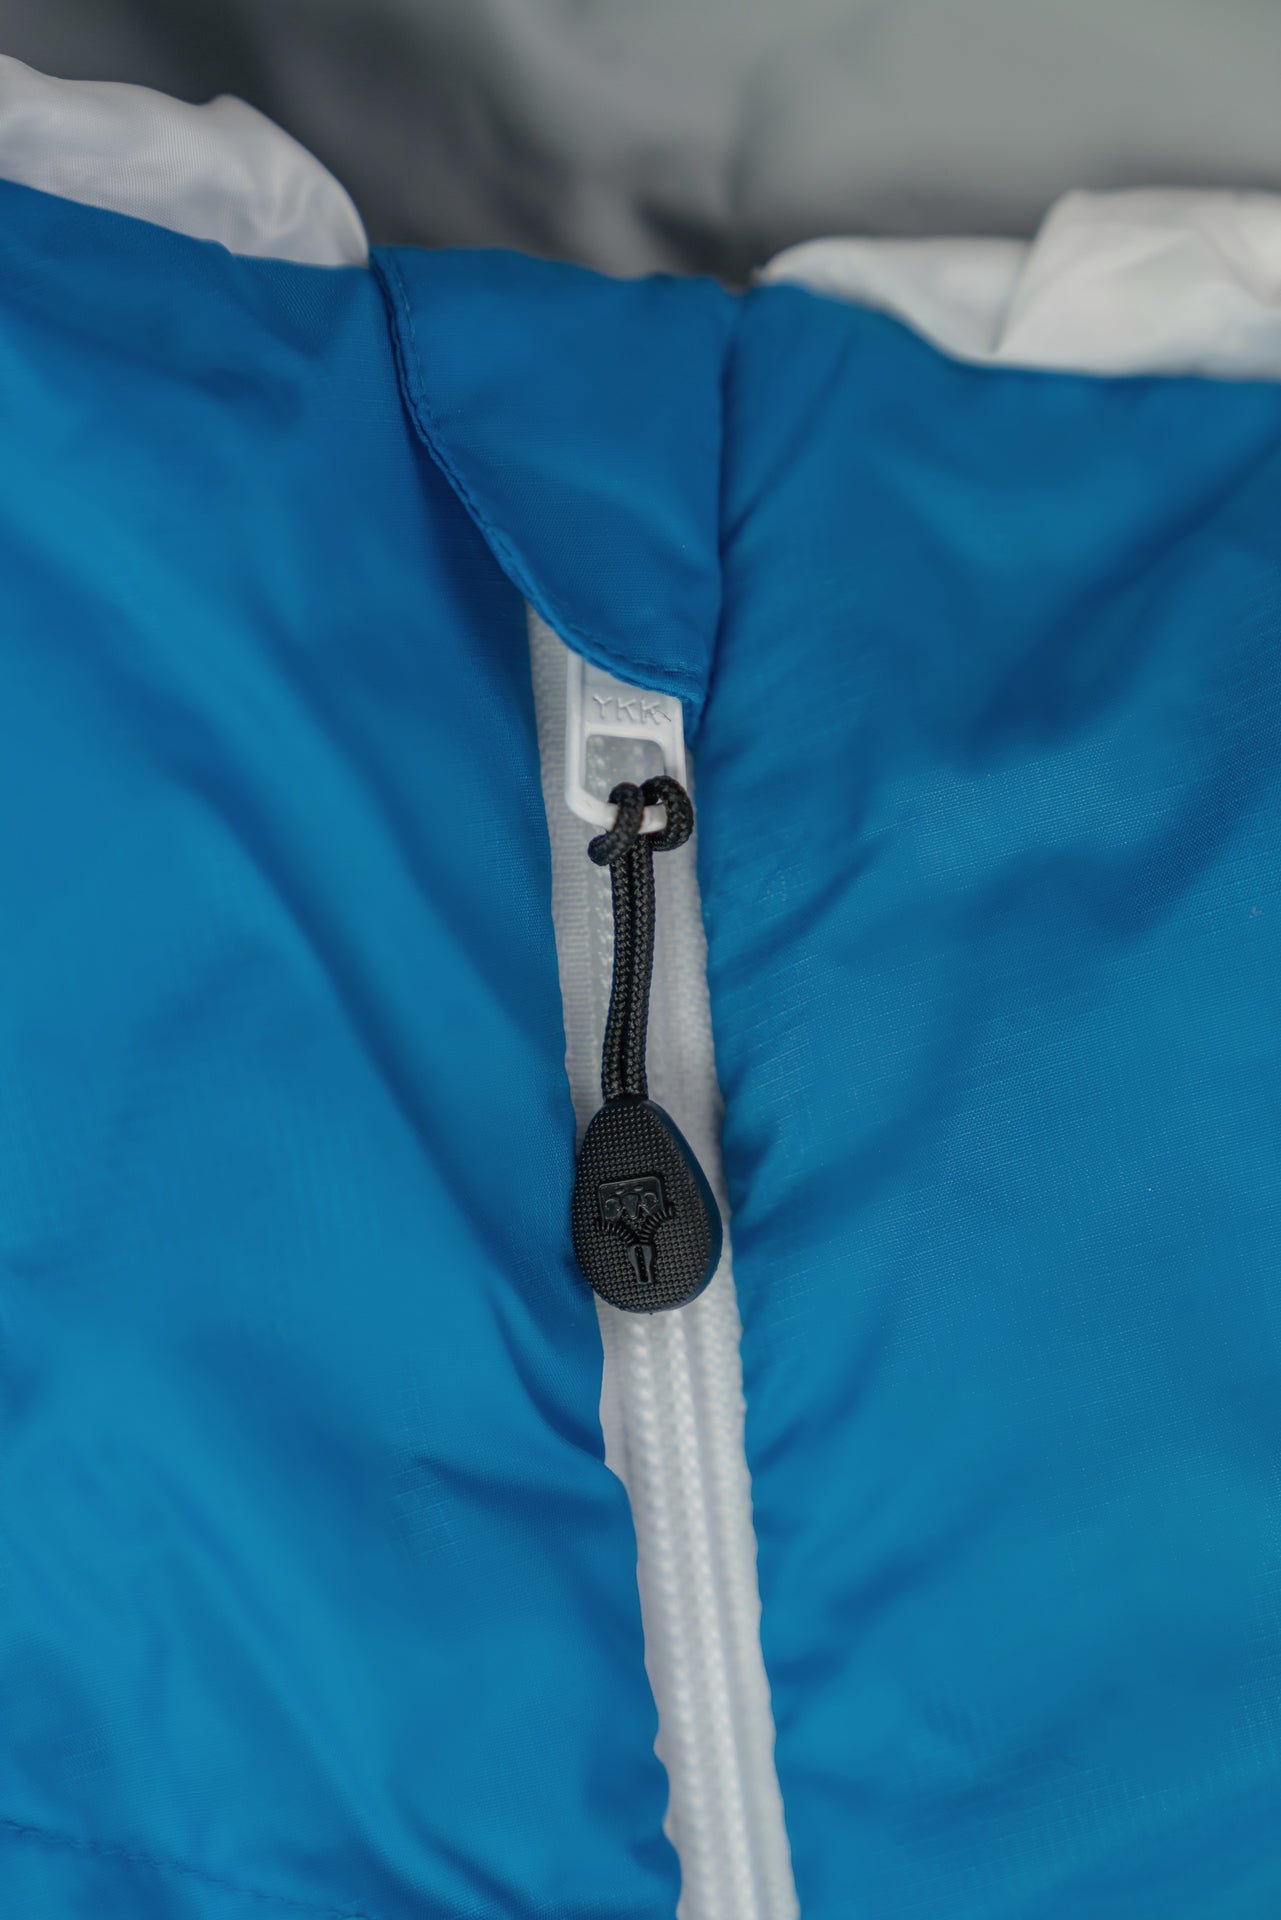 Grüezi bag Komfortschlafsack Biopod Wolle Plus - Reißverschlussabdeckung